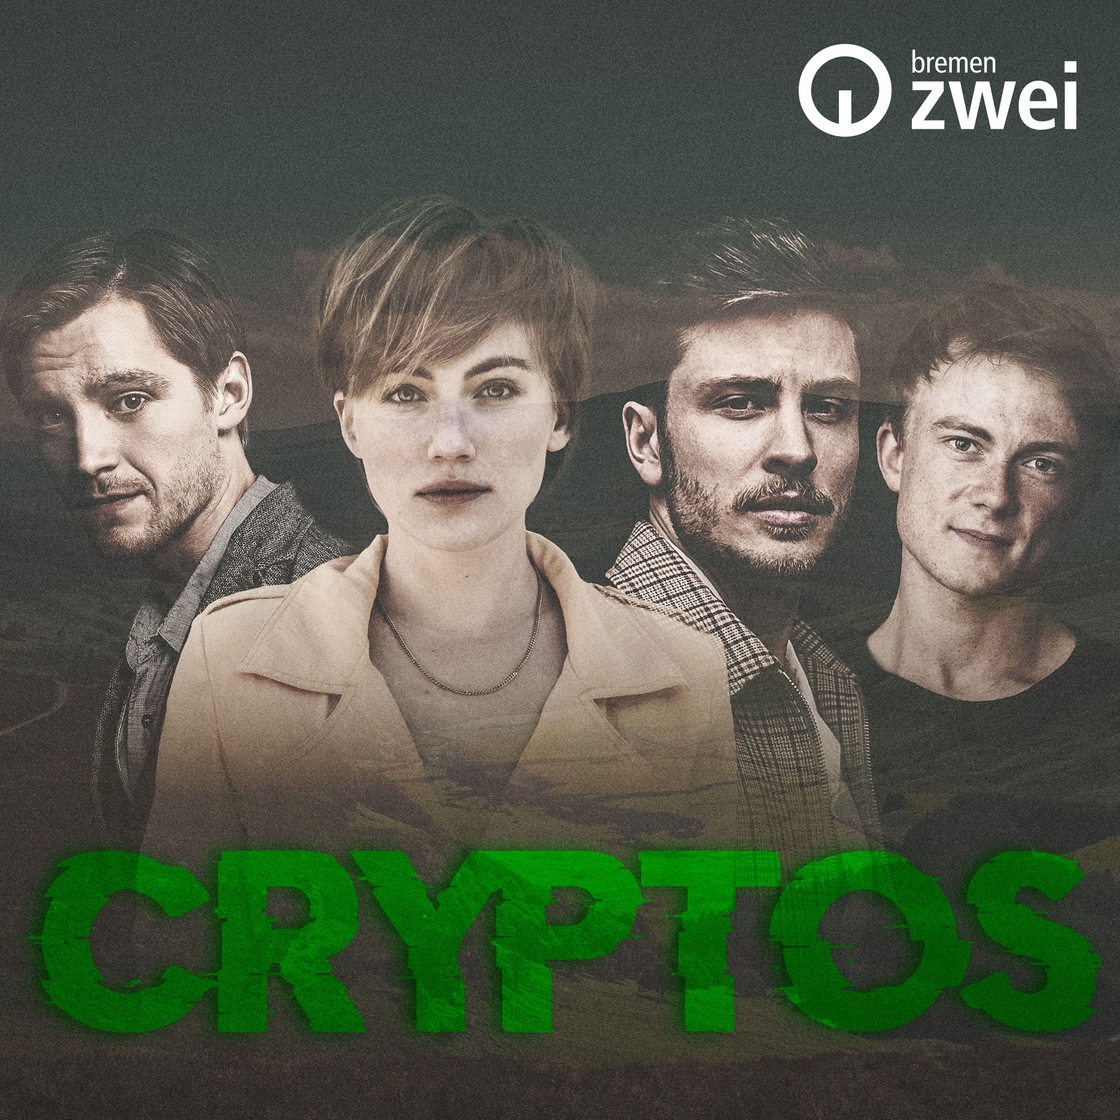 Vier Personen nebeneinander darunter der Schriftzug "Cryptos"